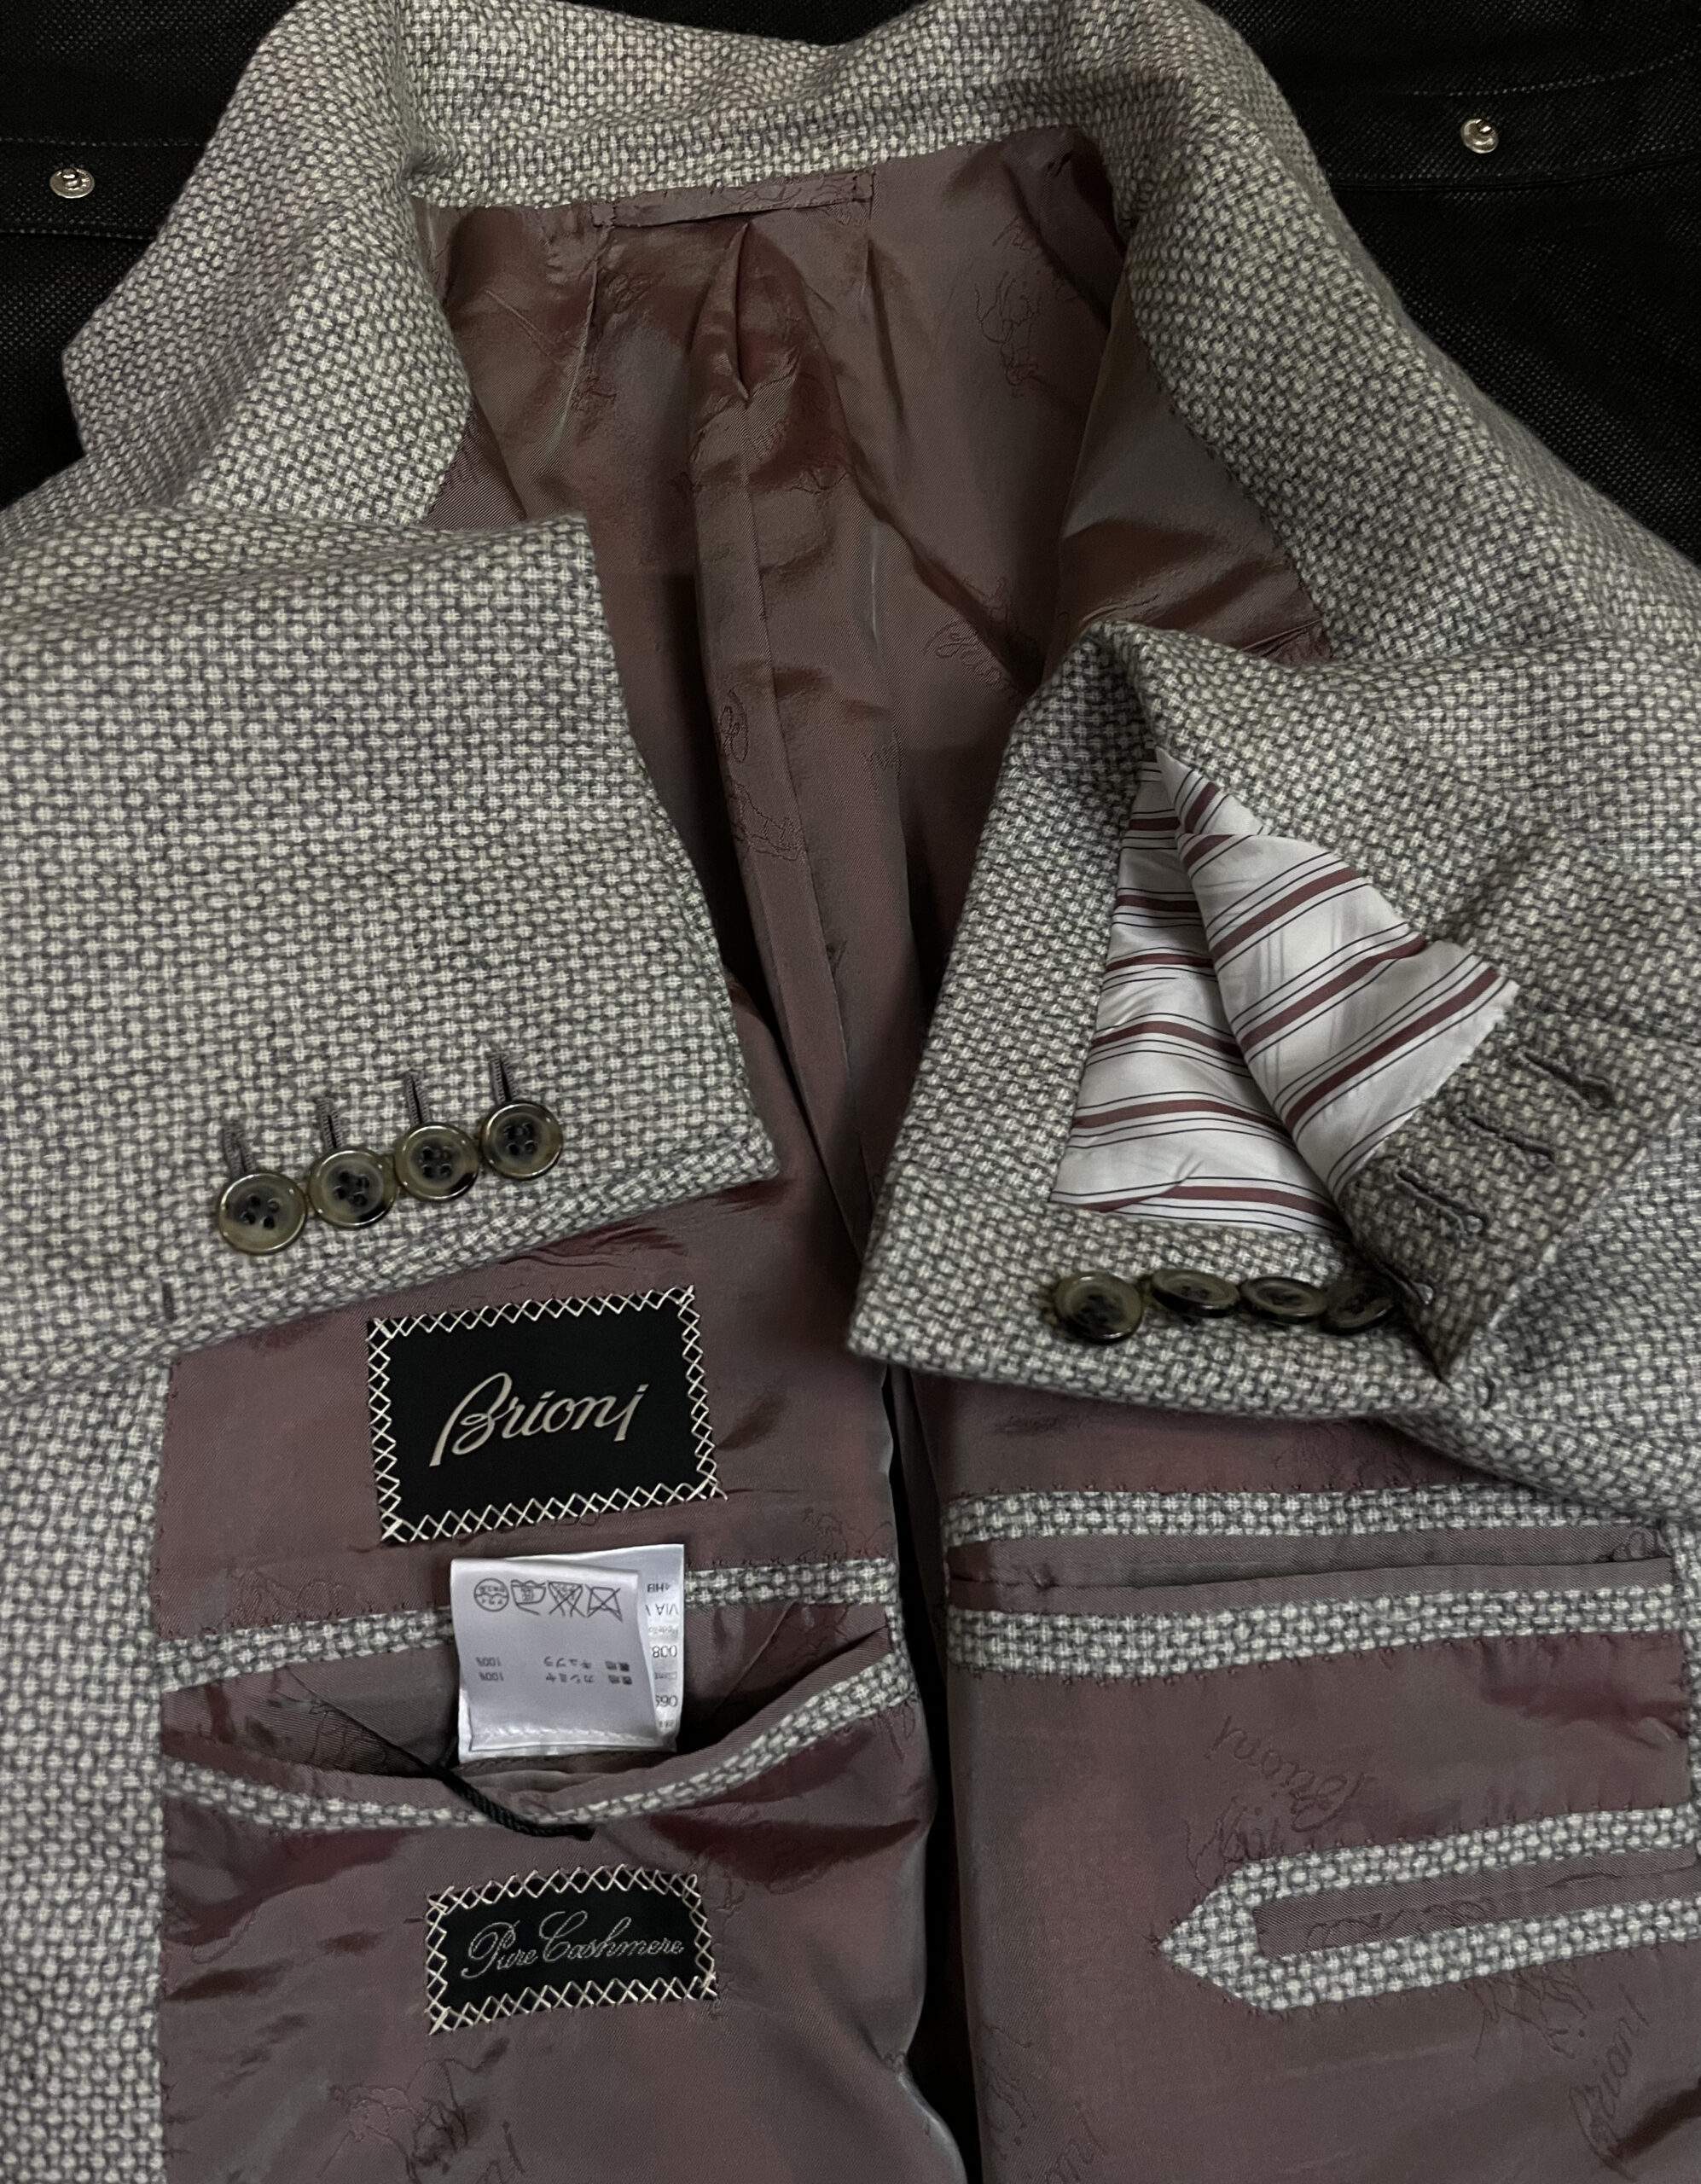 ブリオーニ Brioni】合い物カシミヤ100%ジャガード織りジャケット 58